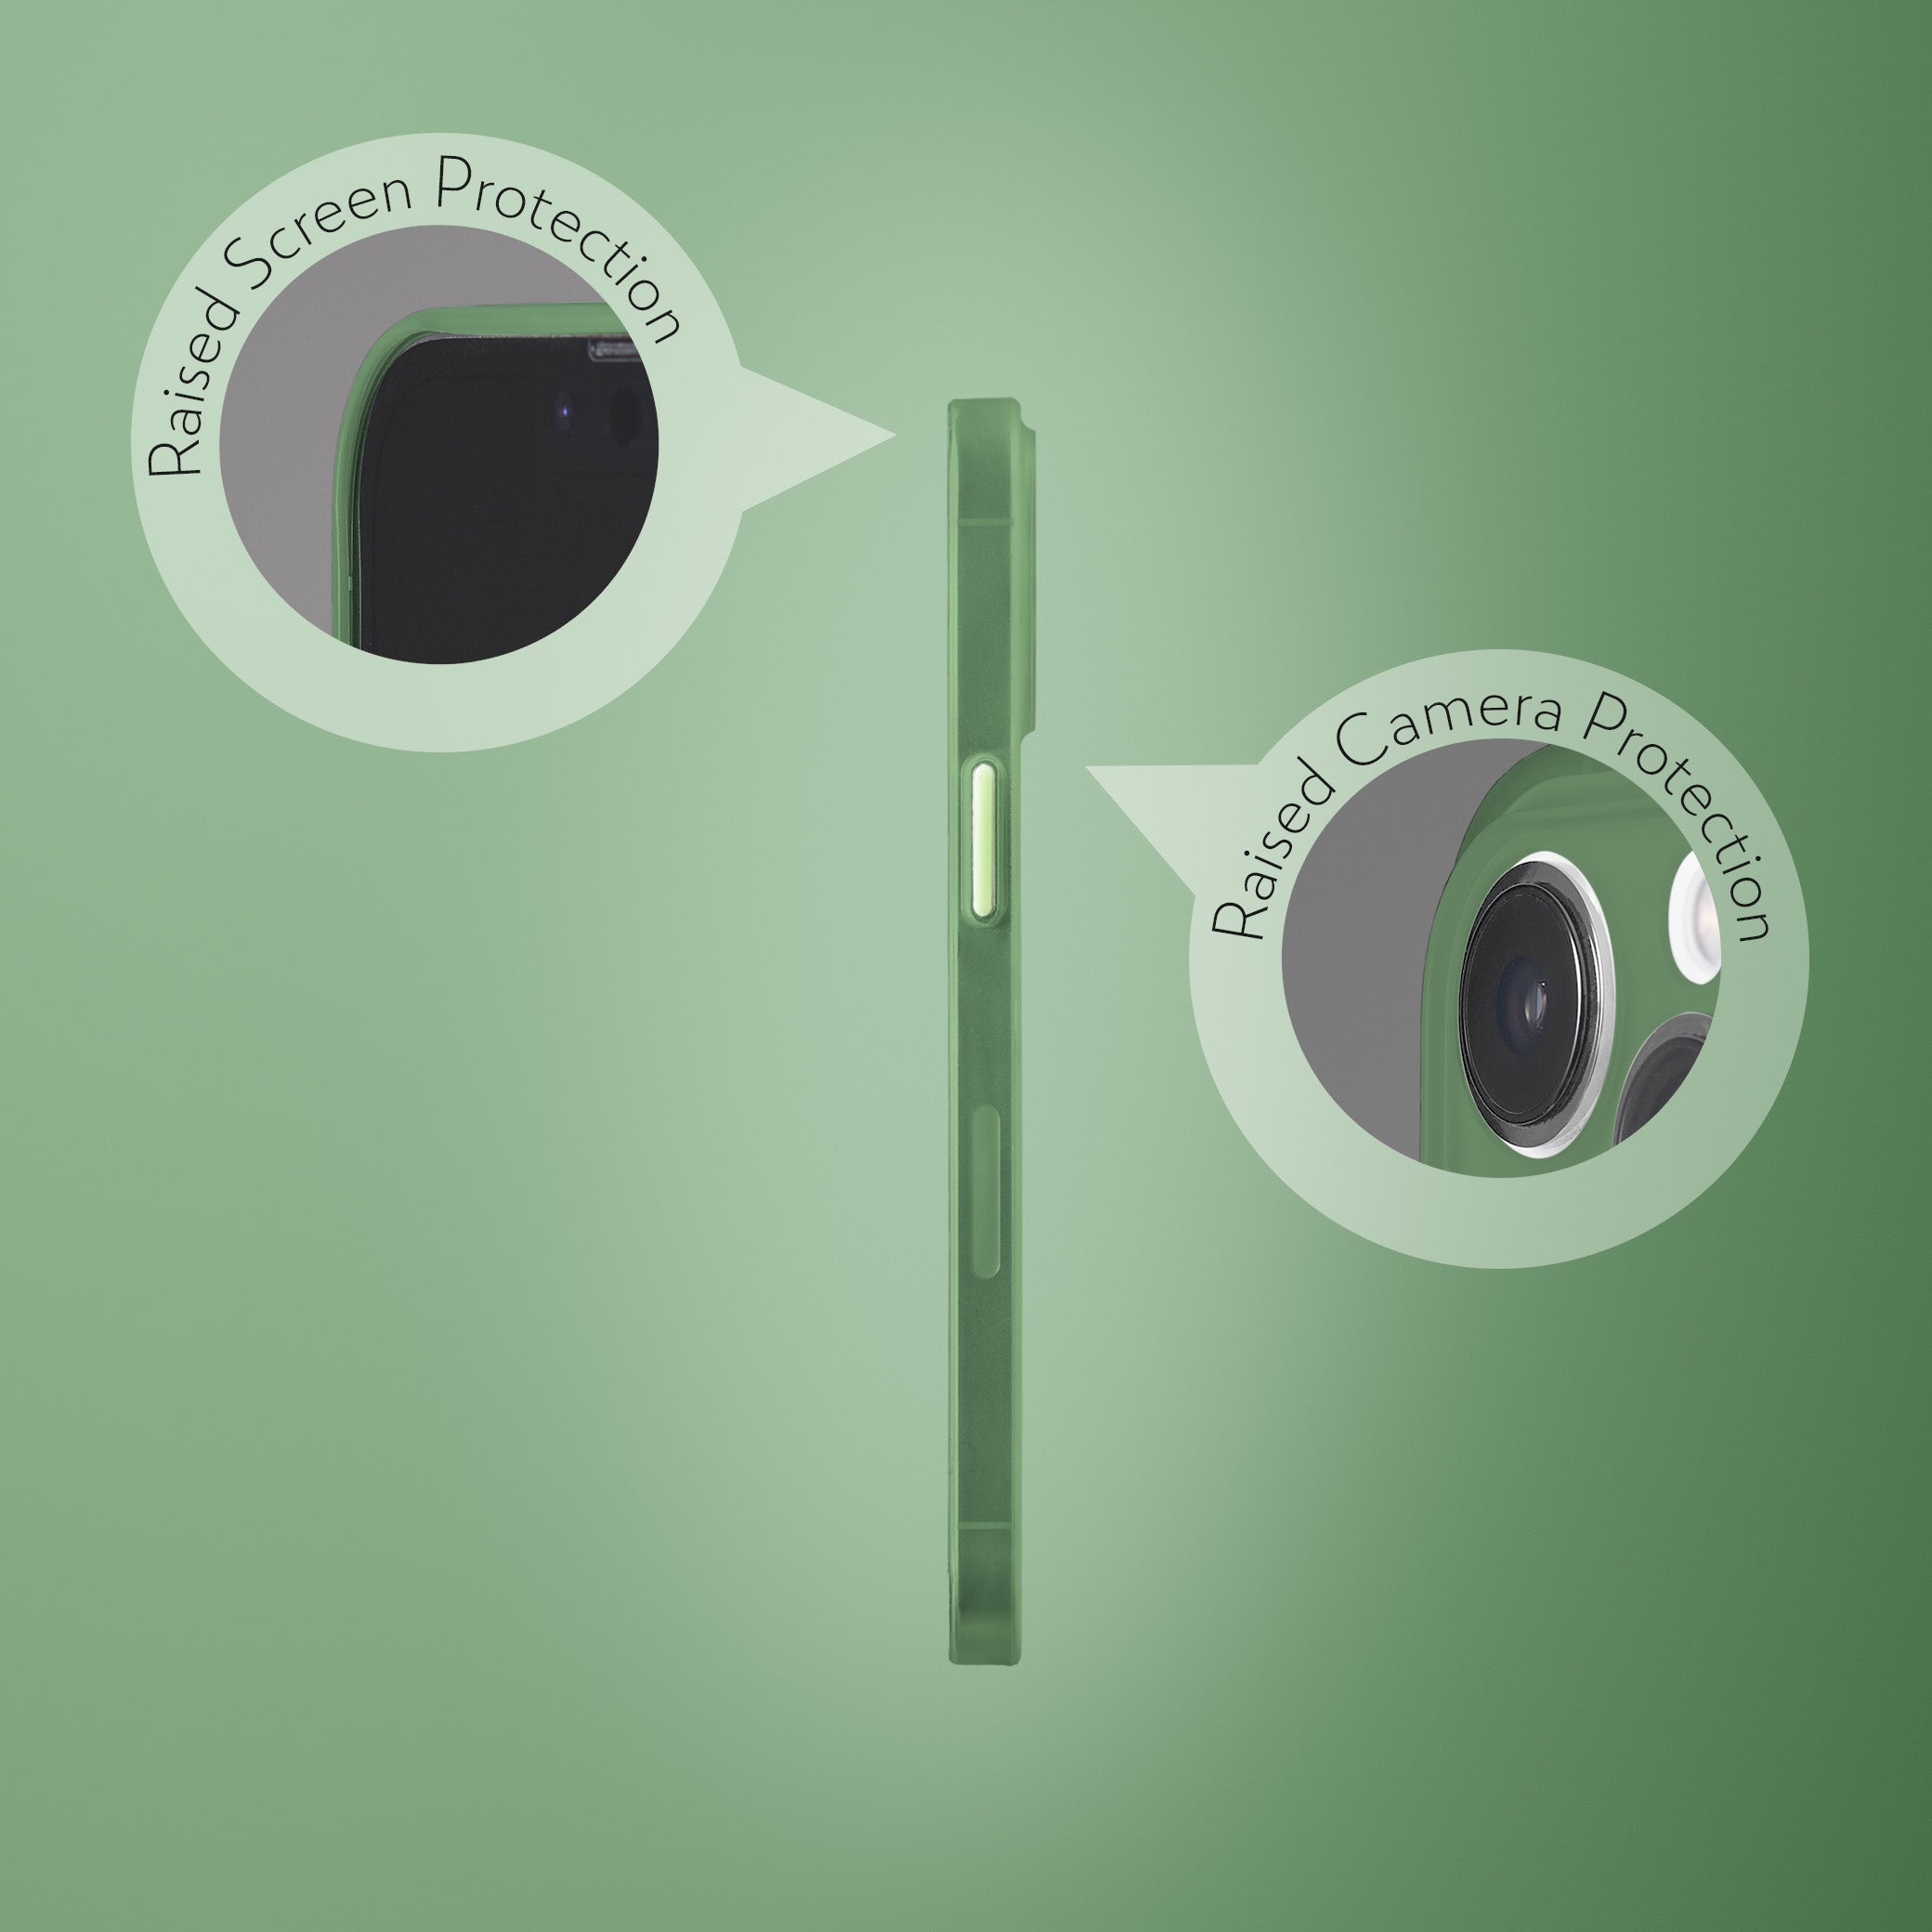 Super Slim Case 2.0 for iPhone 12 Pro Max - Avacado Green